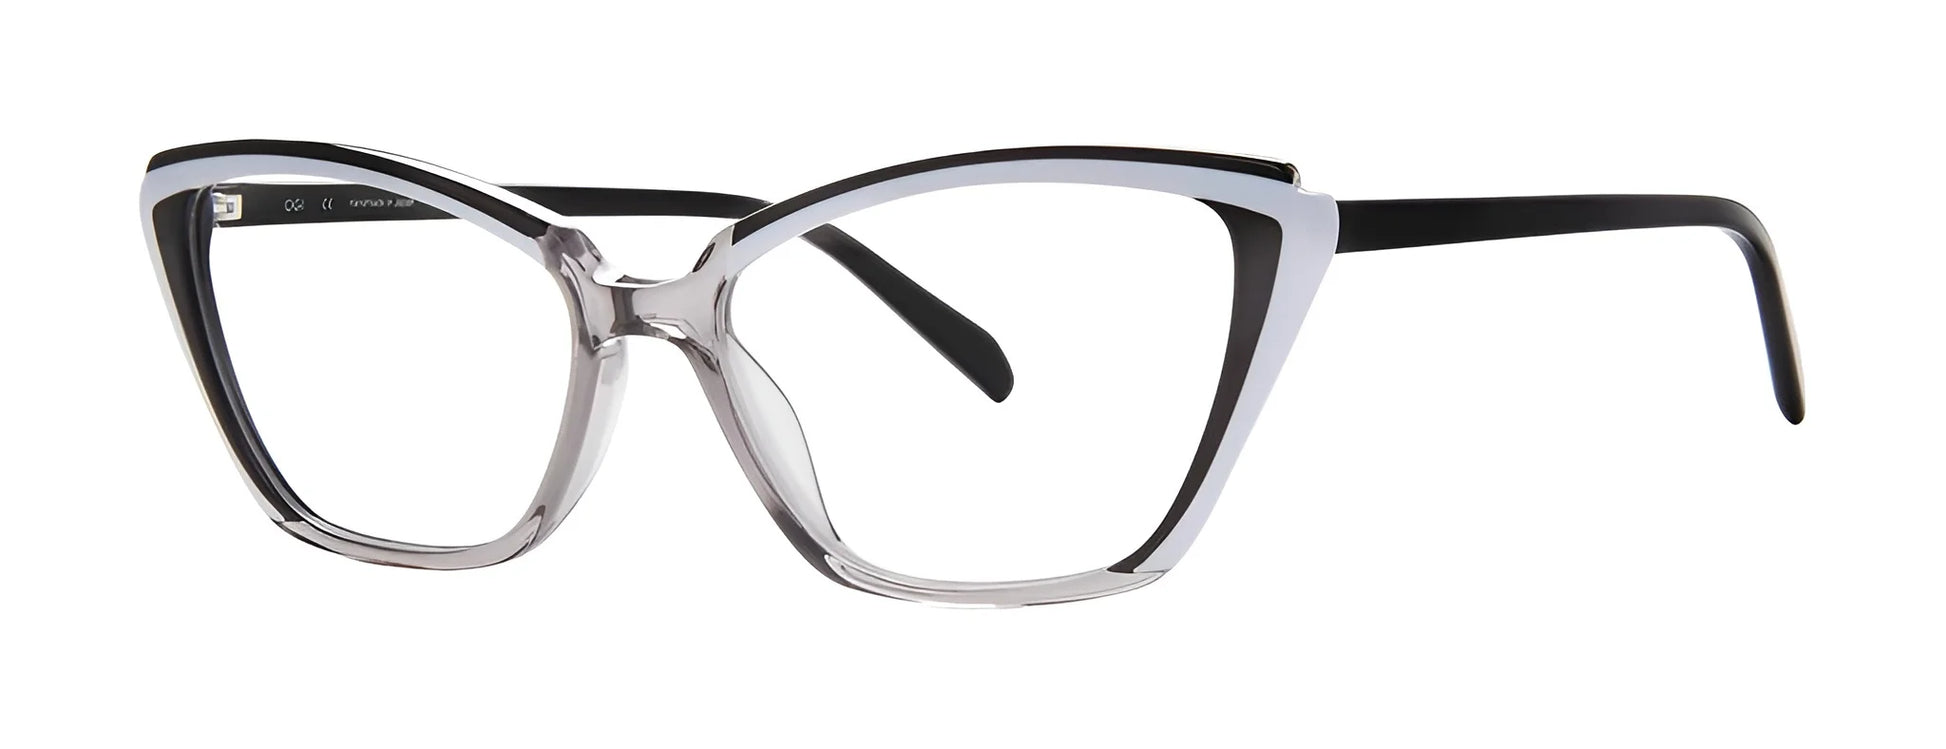 OGI WISP Eyeglasses Black / White